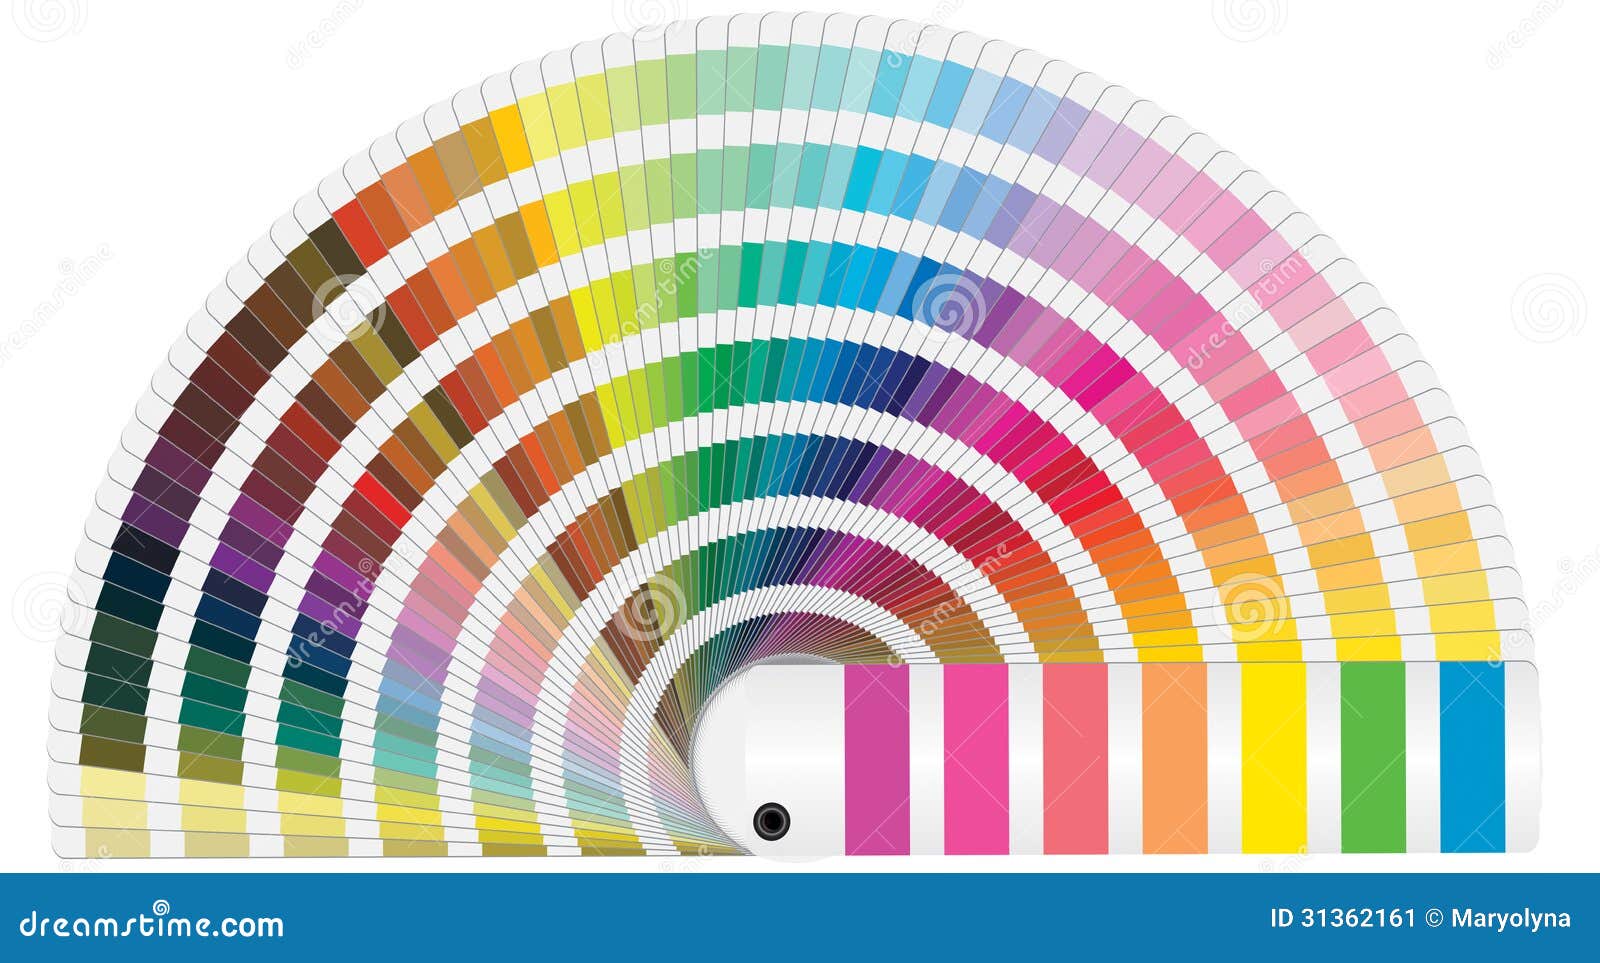 PASTEL COLORS DIGITAL Paper 40 Pantone Plain Color Backgrounds in